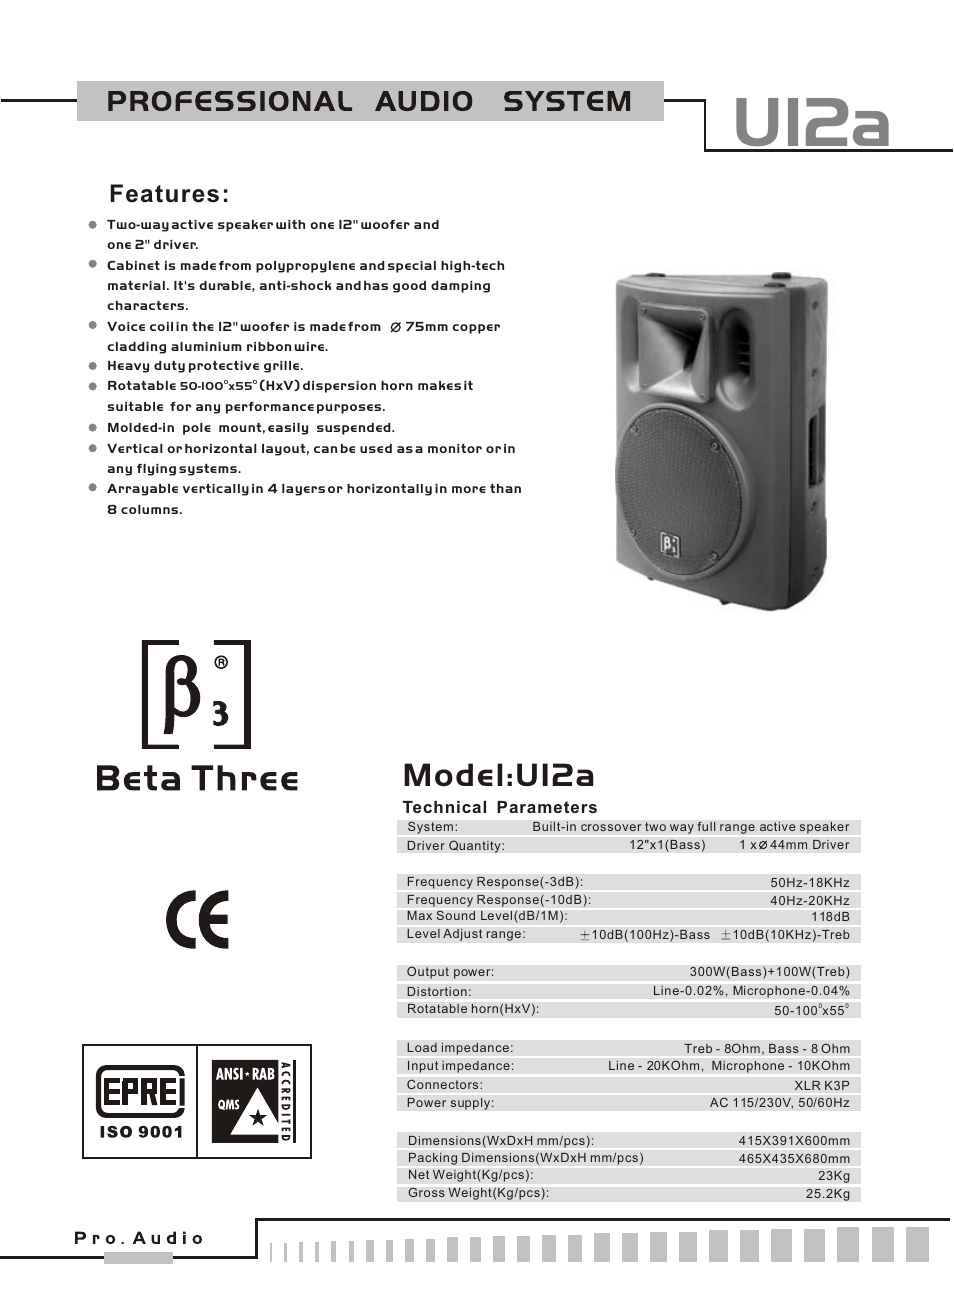 Beta 3 – U12A